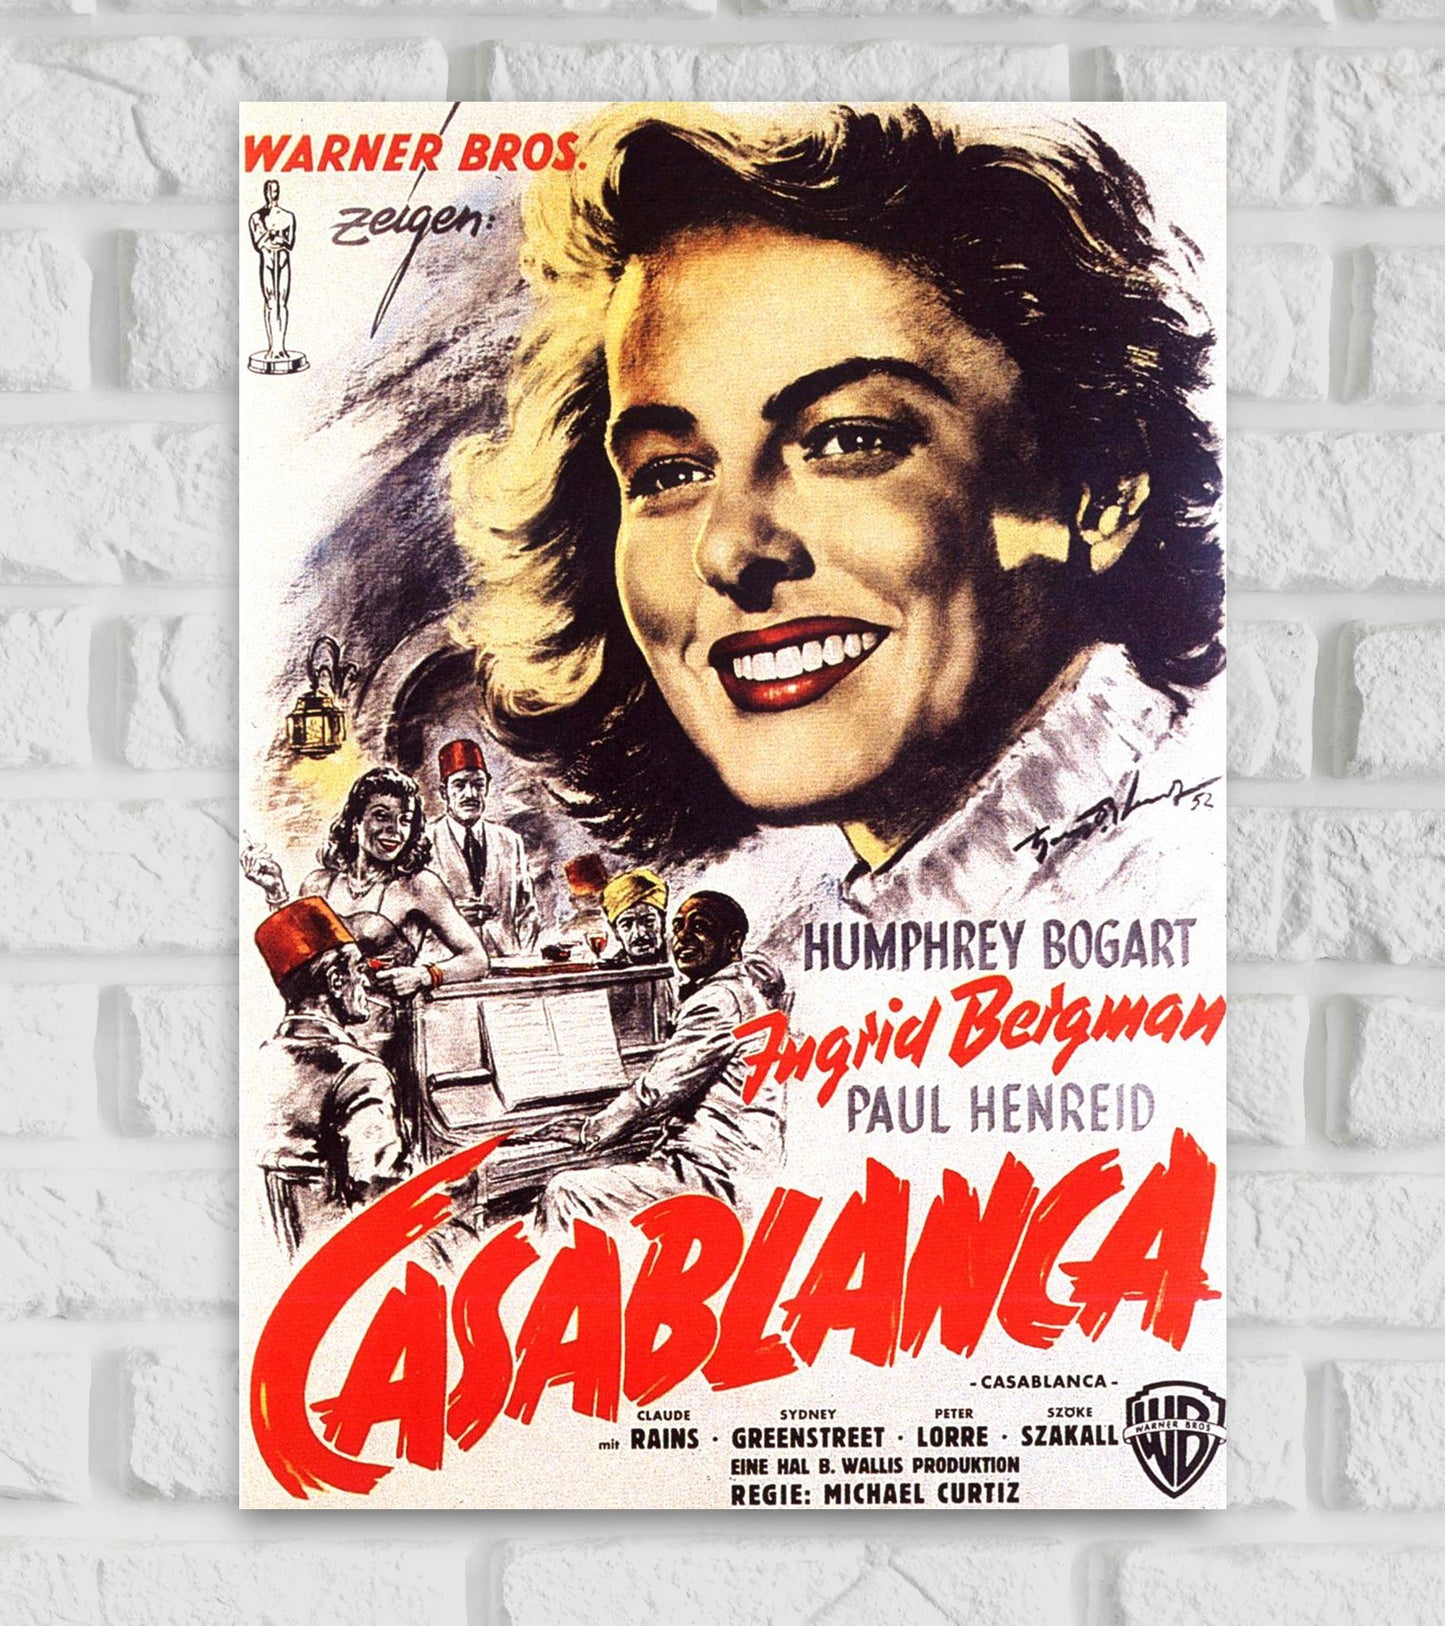 Casablanca Movie Art work